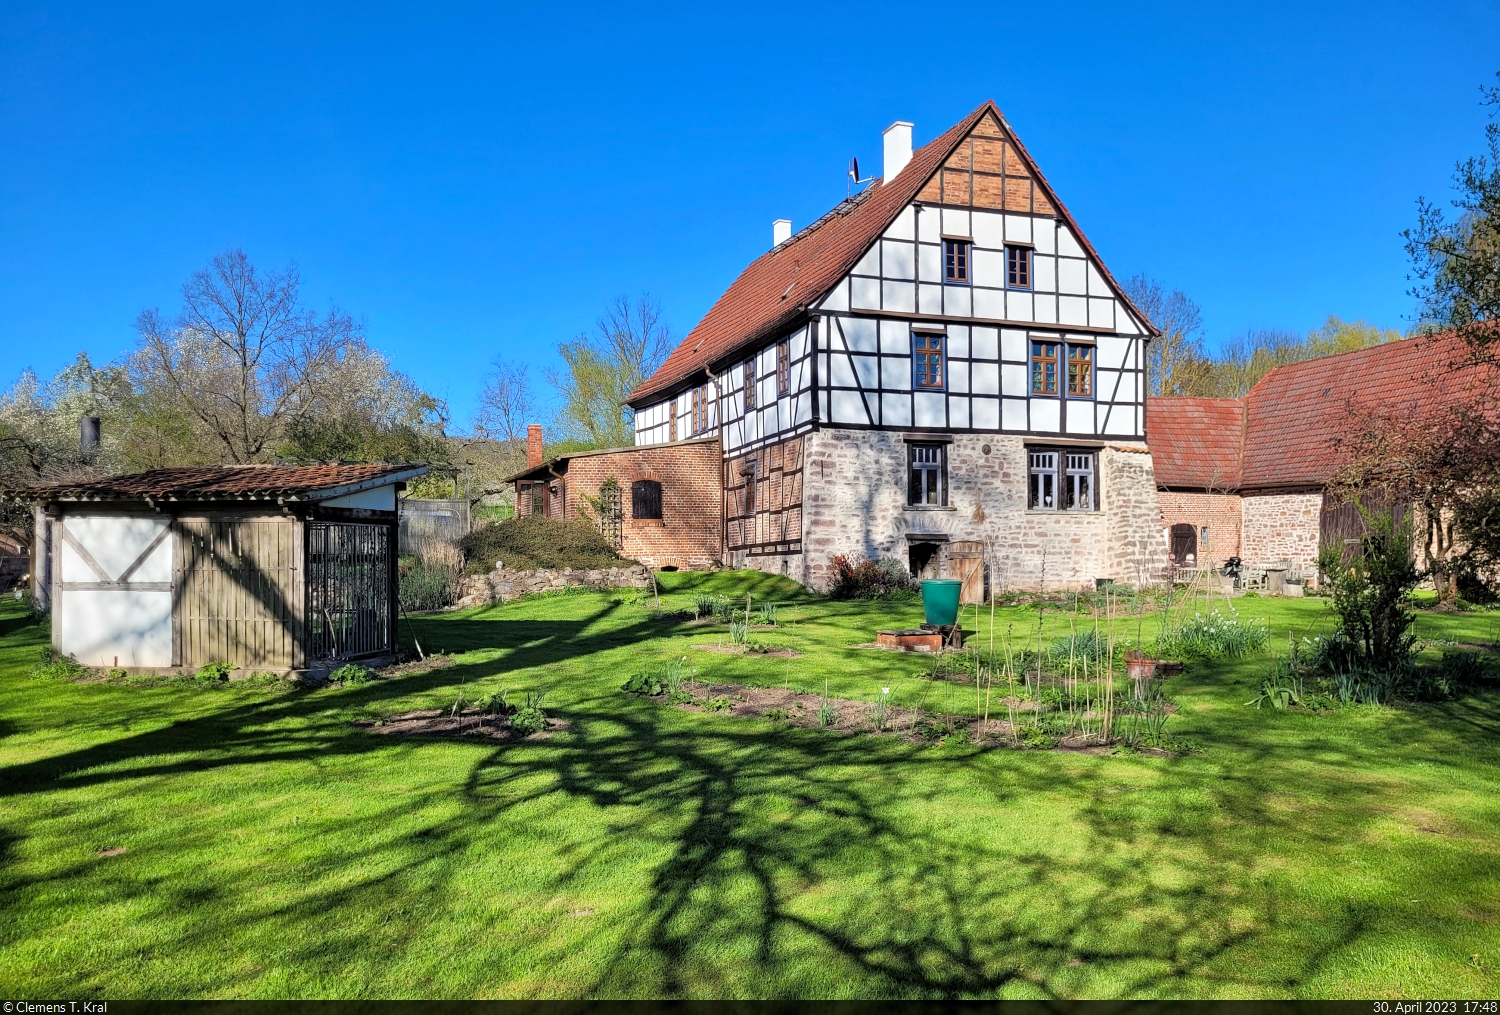 Sehr gastfreundlich bewirtet wird man in der Obermhle bei Blankenheim (Sangerhausen). Dem schnen Fachwerkhaus schliet sich ebenso eine grozgige, gepflegte Auenanlage und eine Tpferei an.

🕓 30.4.2023 | 17:48 Uhr